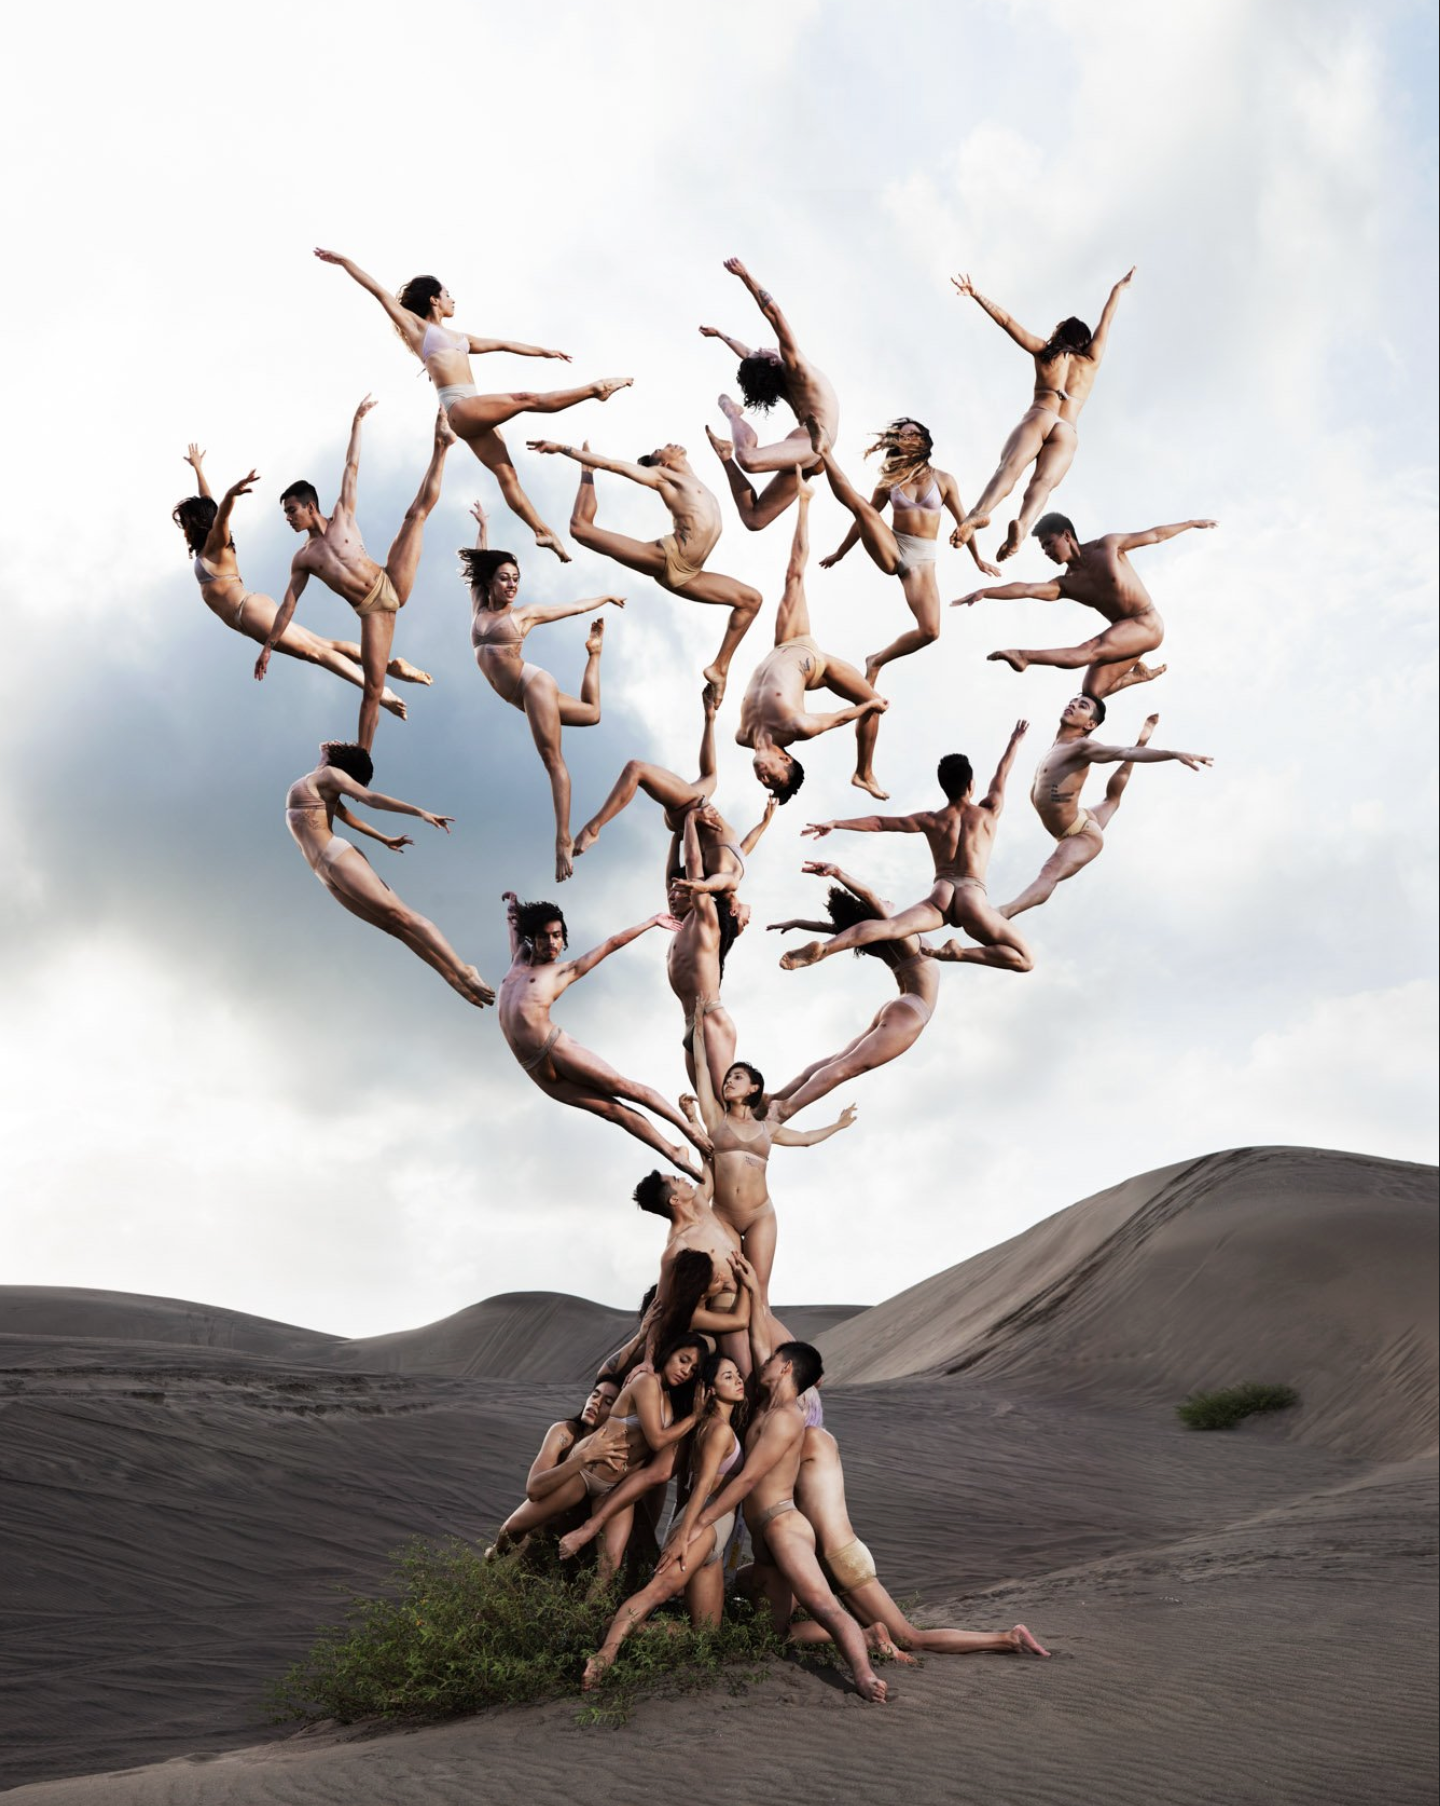 La obra de Rob Woodcox "Tree of Life" participa en "Ancient Future" durante Miami Art Week.